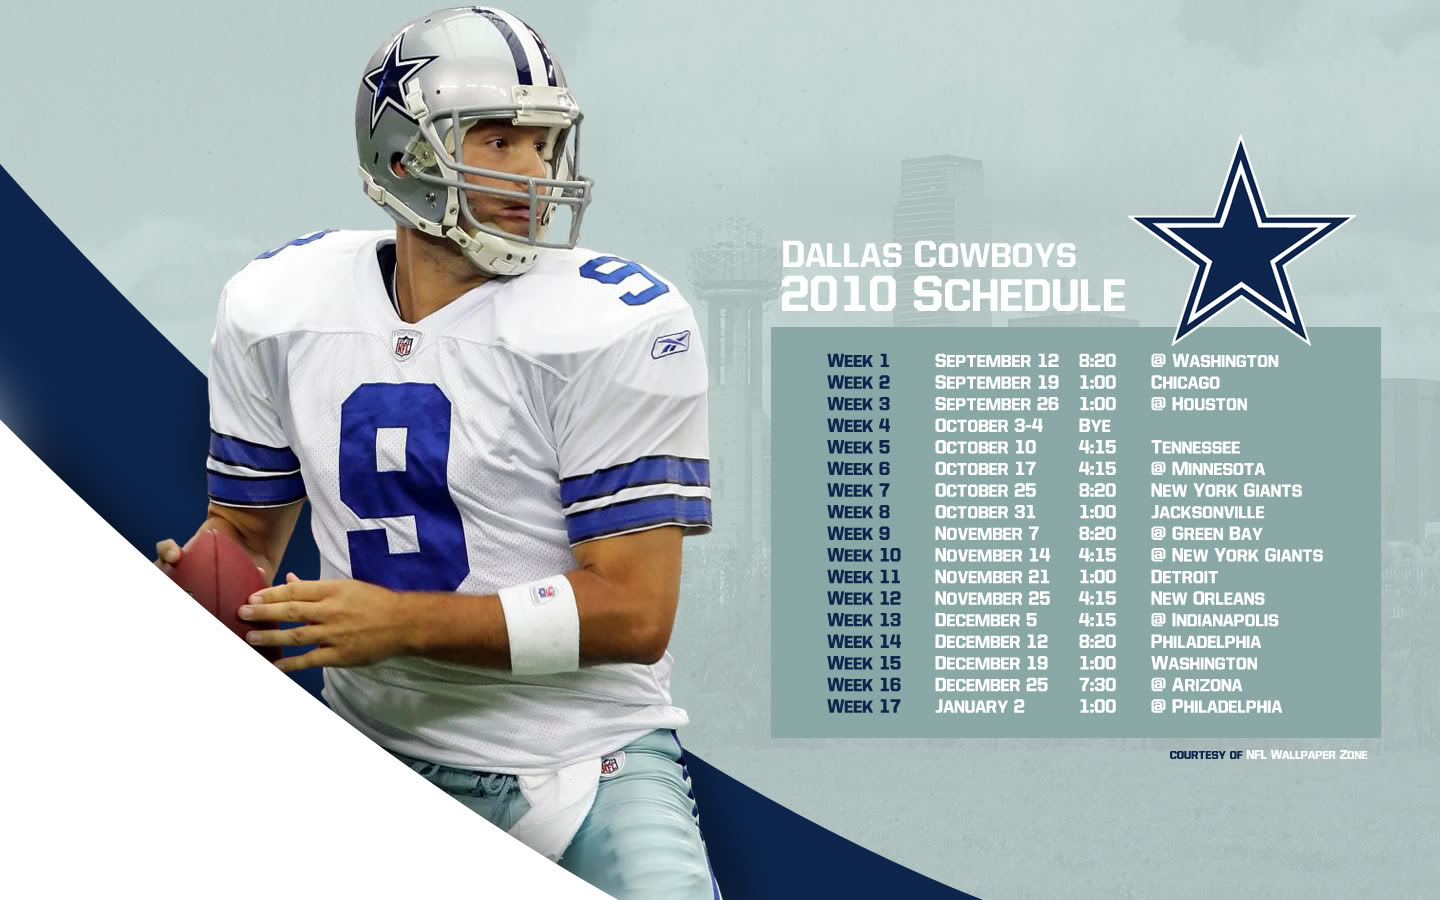 Dallas Cowboys Schedule Wallpaper